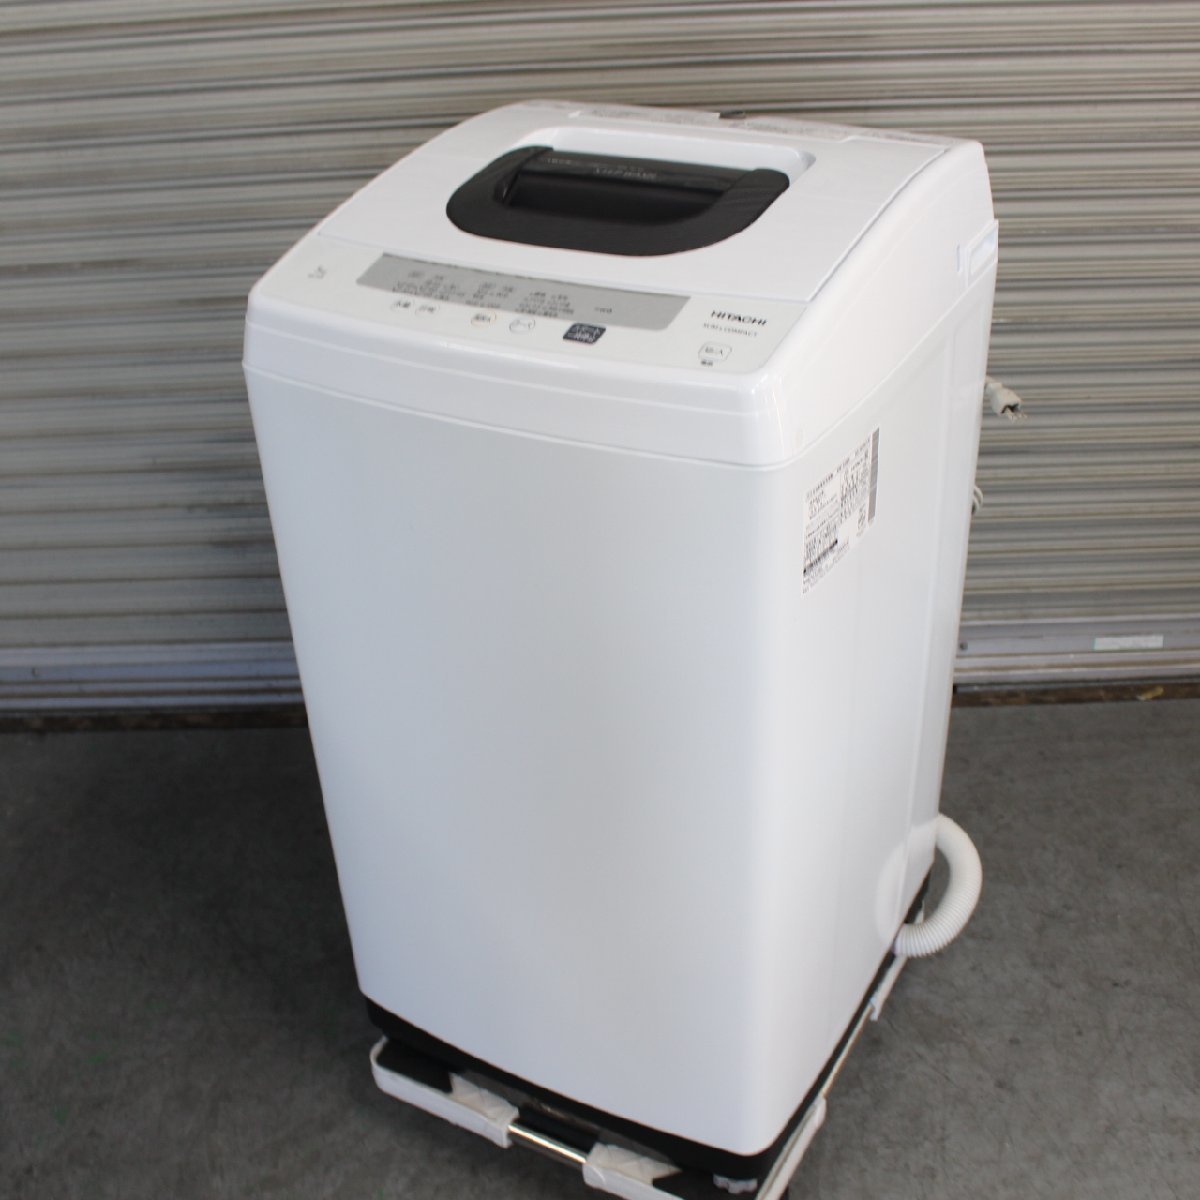 東京都狛江市にて 日立 全自動洗濯機 NW-50E 2020年製 を出張買取させて頂きました。